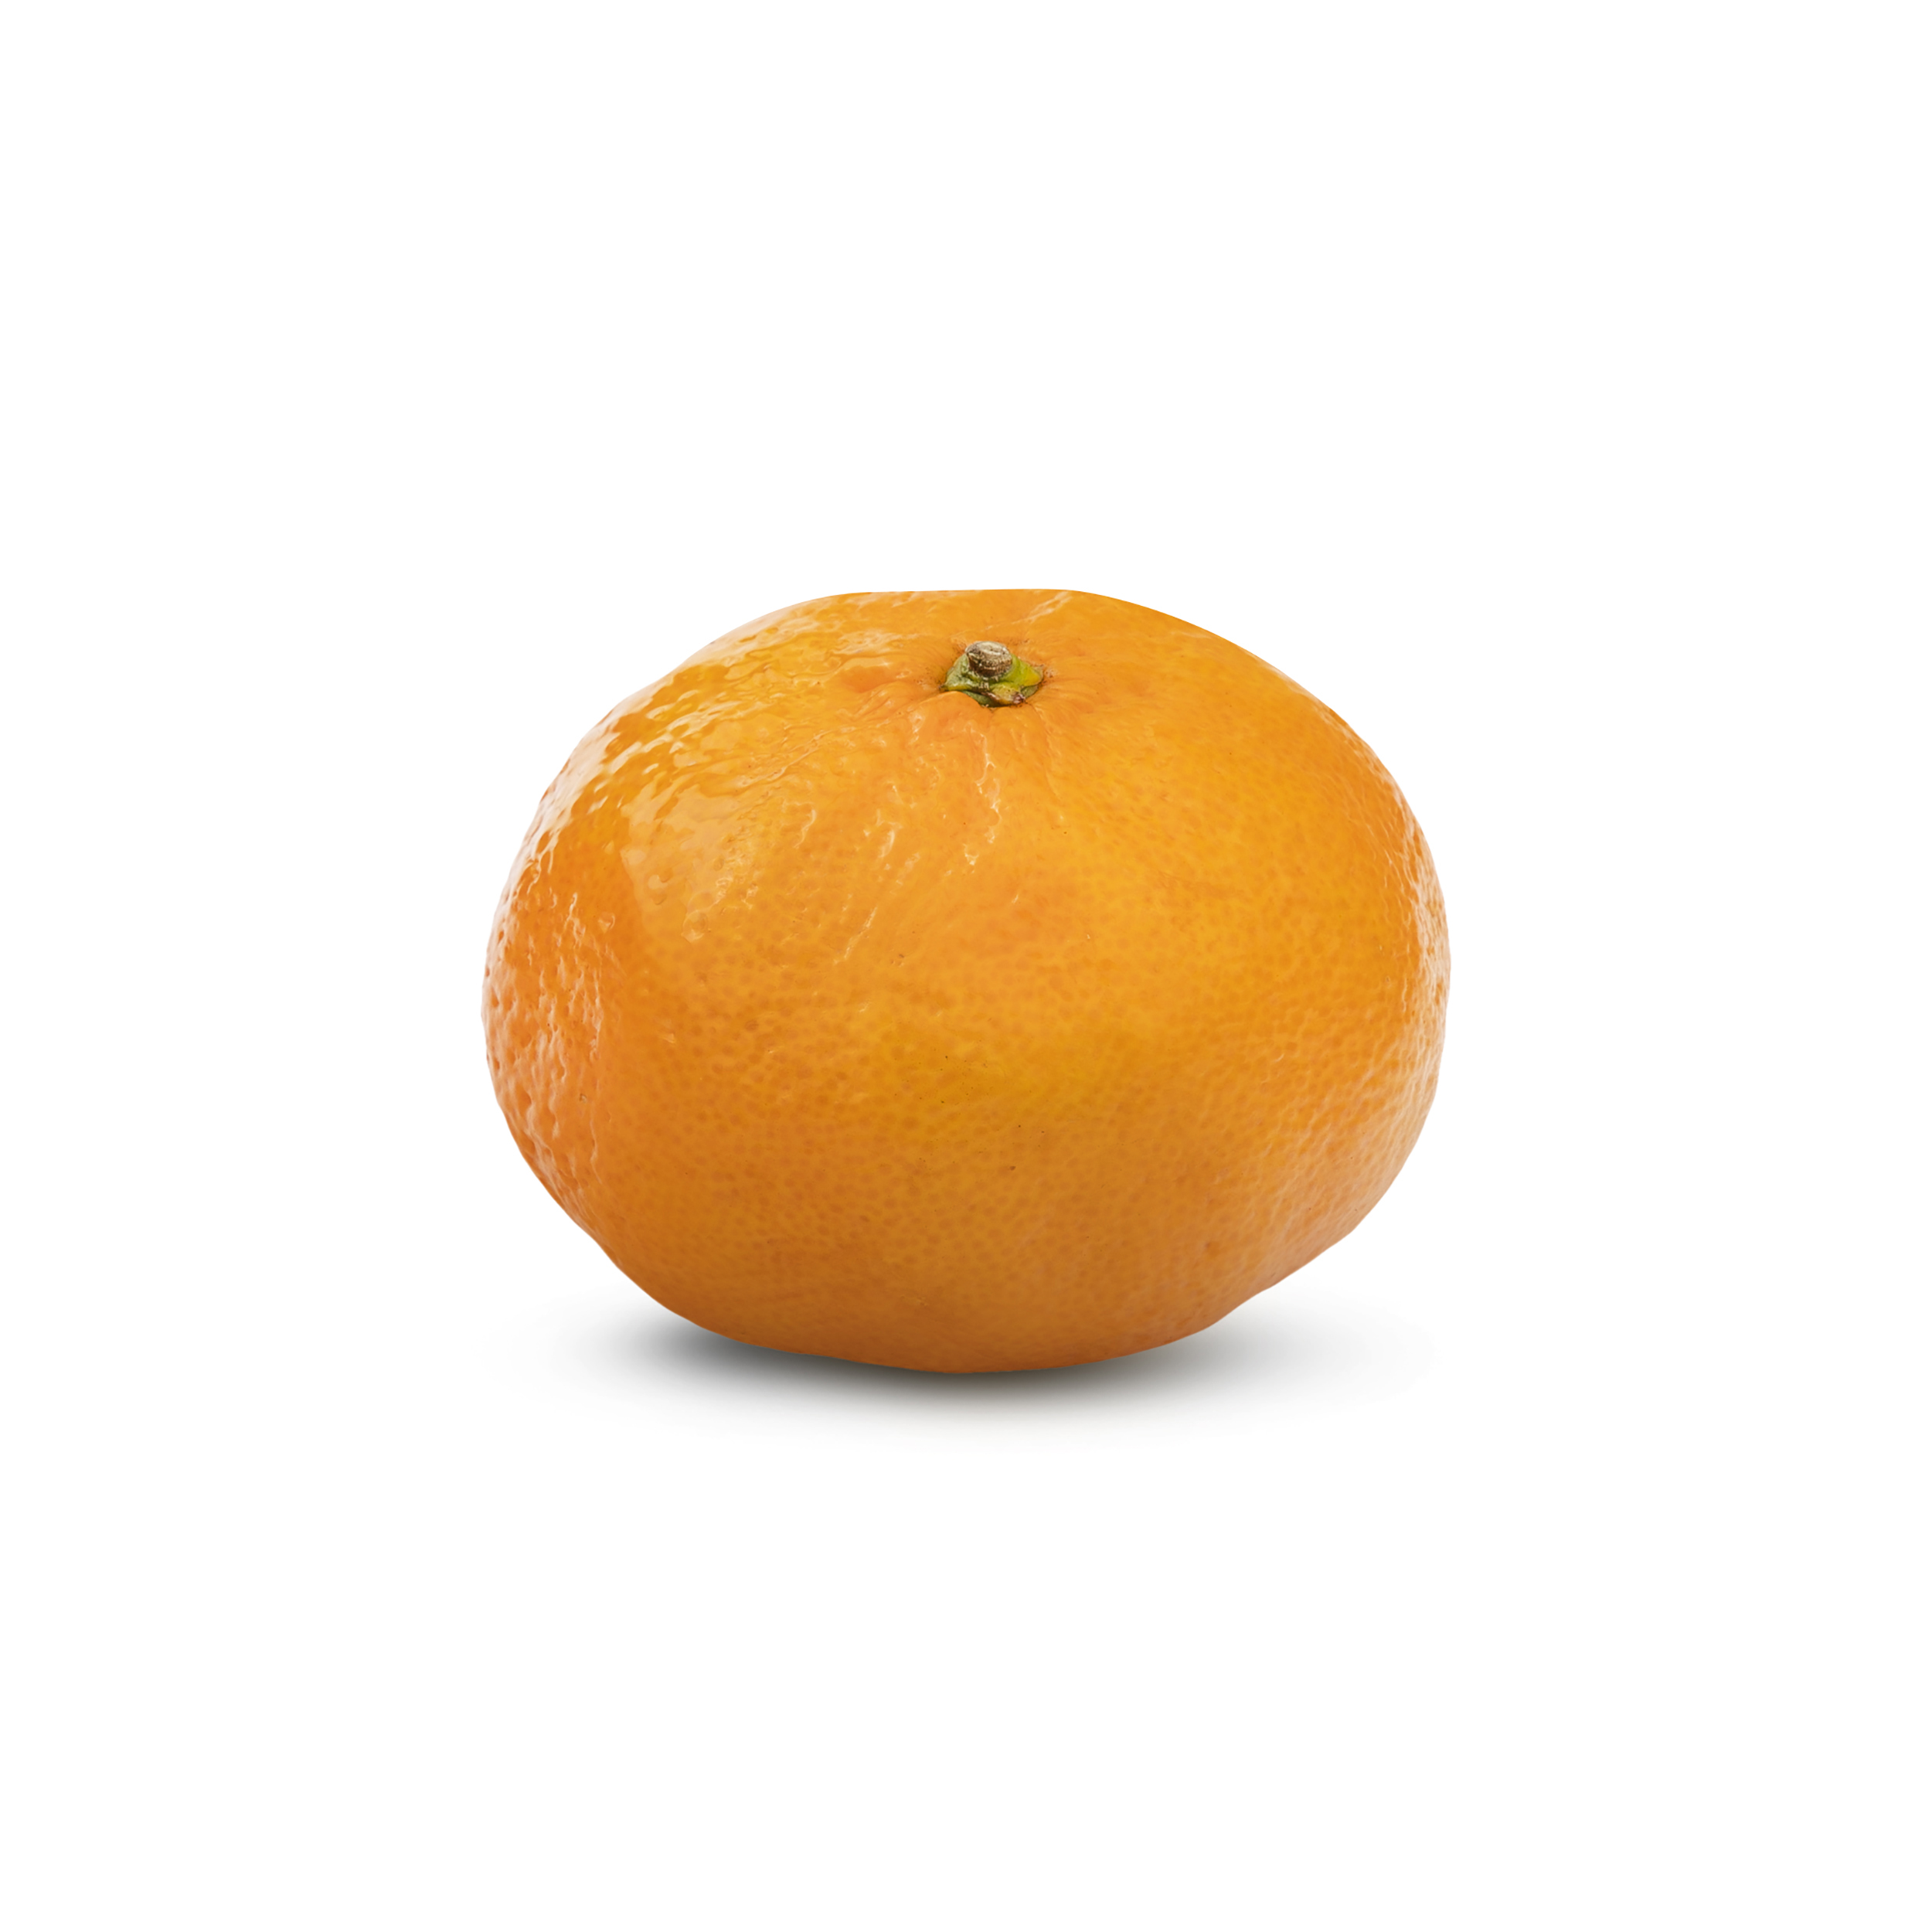 نارنگی میوری - 1 کیلوگرم